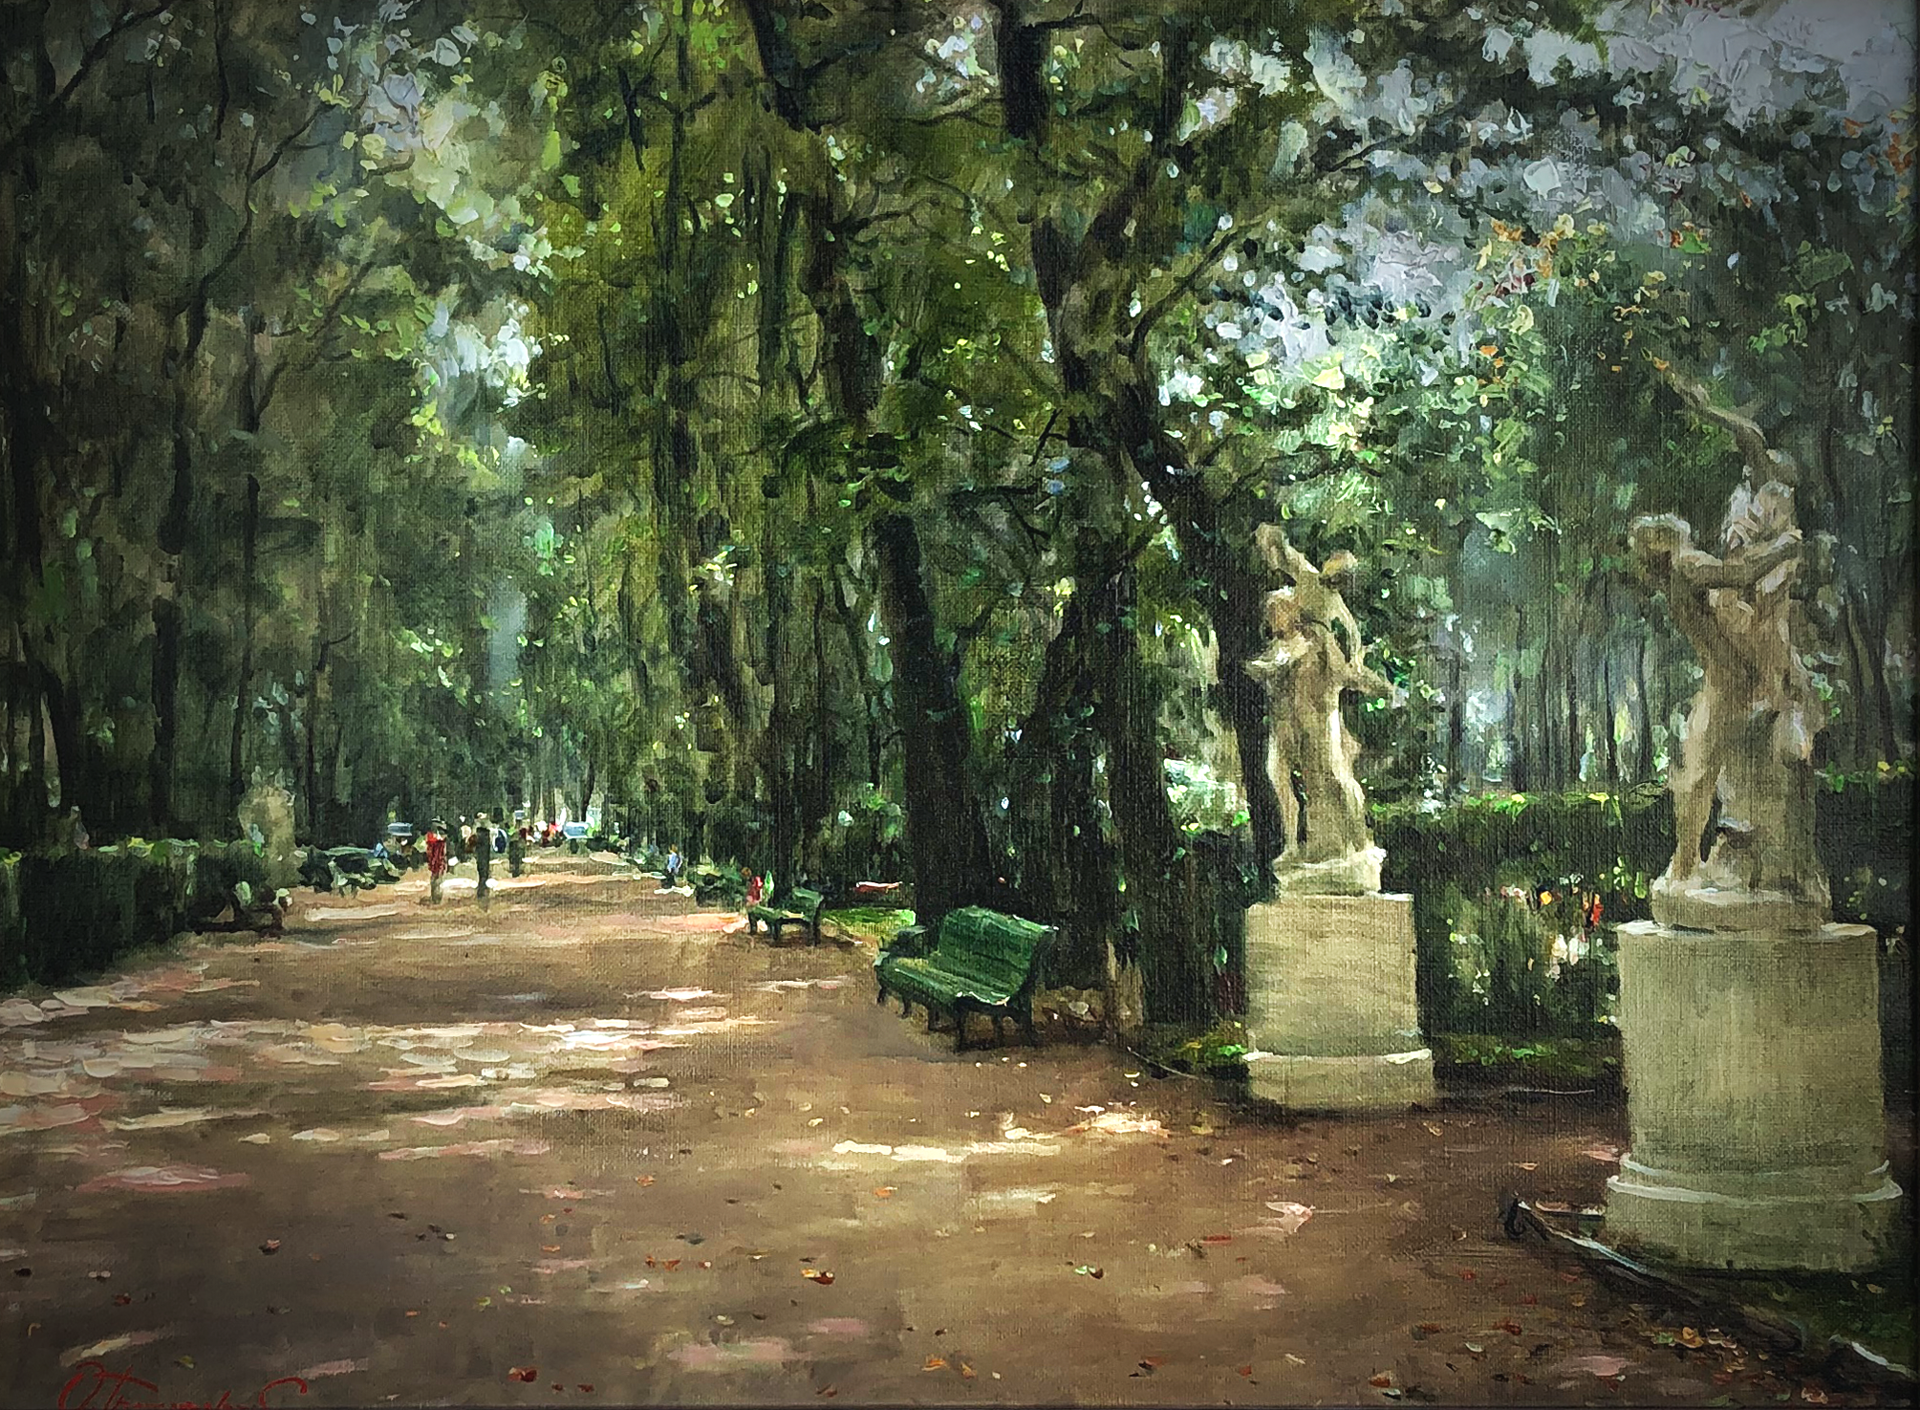 "In The Old Park" by Oleg Trofimov